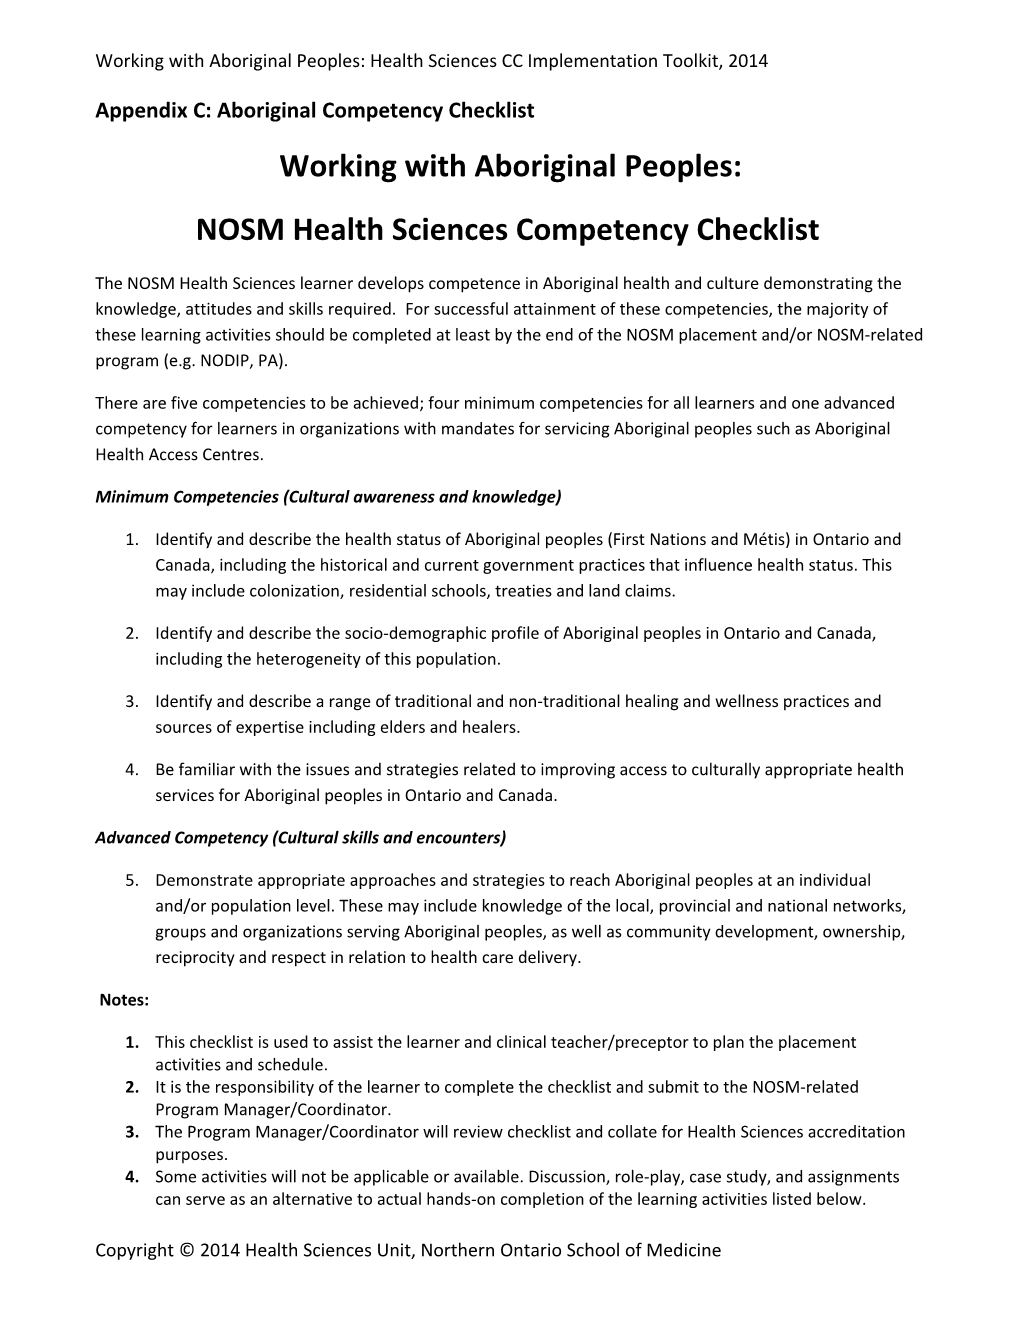 Appendix C: Aboriginal Competency Checklist